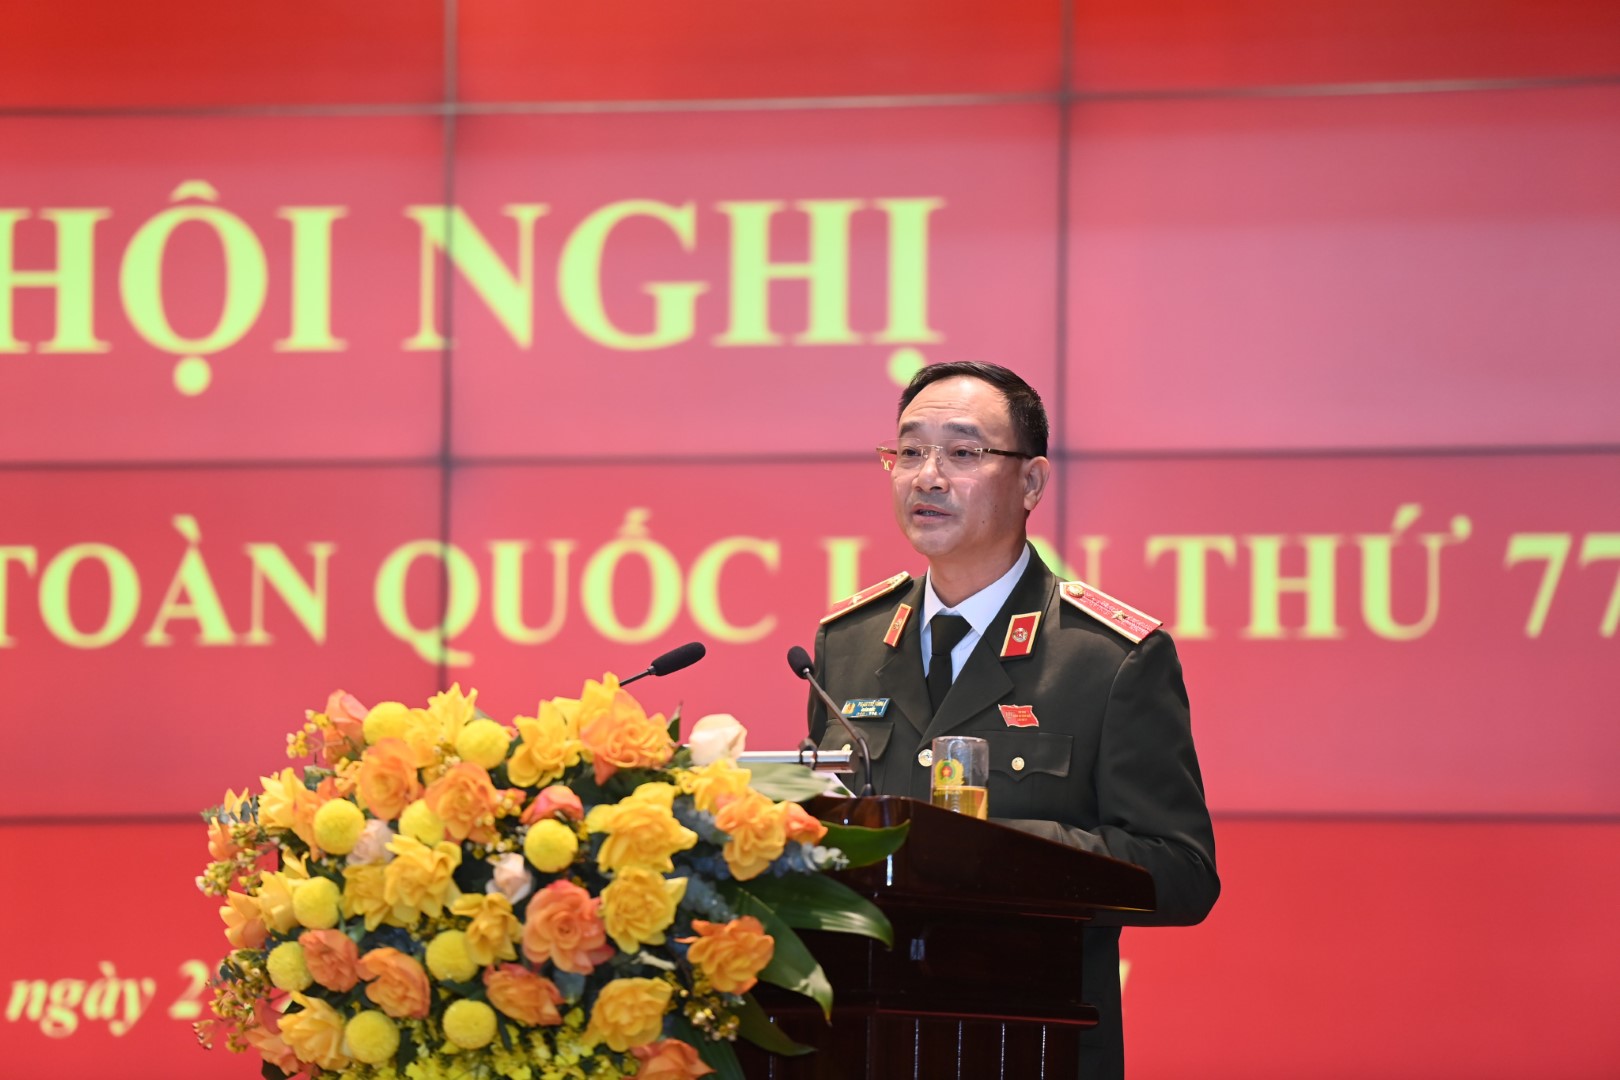 Đồng chí Thiếu tướng Phạm Thế Tùng, Giám đốc Công an tỉnh Nghệ An trình bày tham luận tại Hội nghị Công an toàn quốc lần thứ 77, ngày 27/12/2021. Ảnh: Tất Đạt